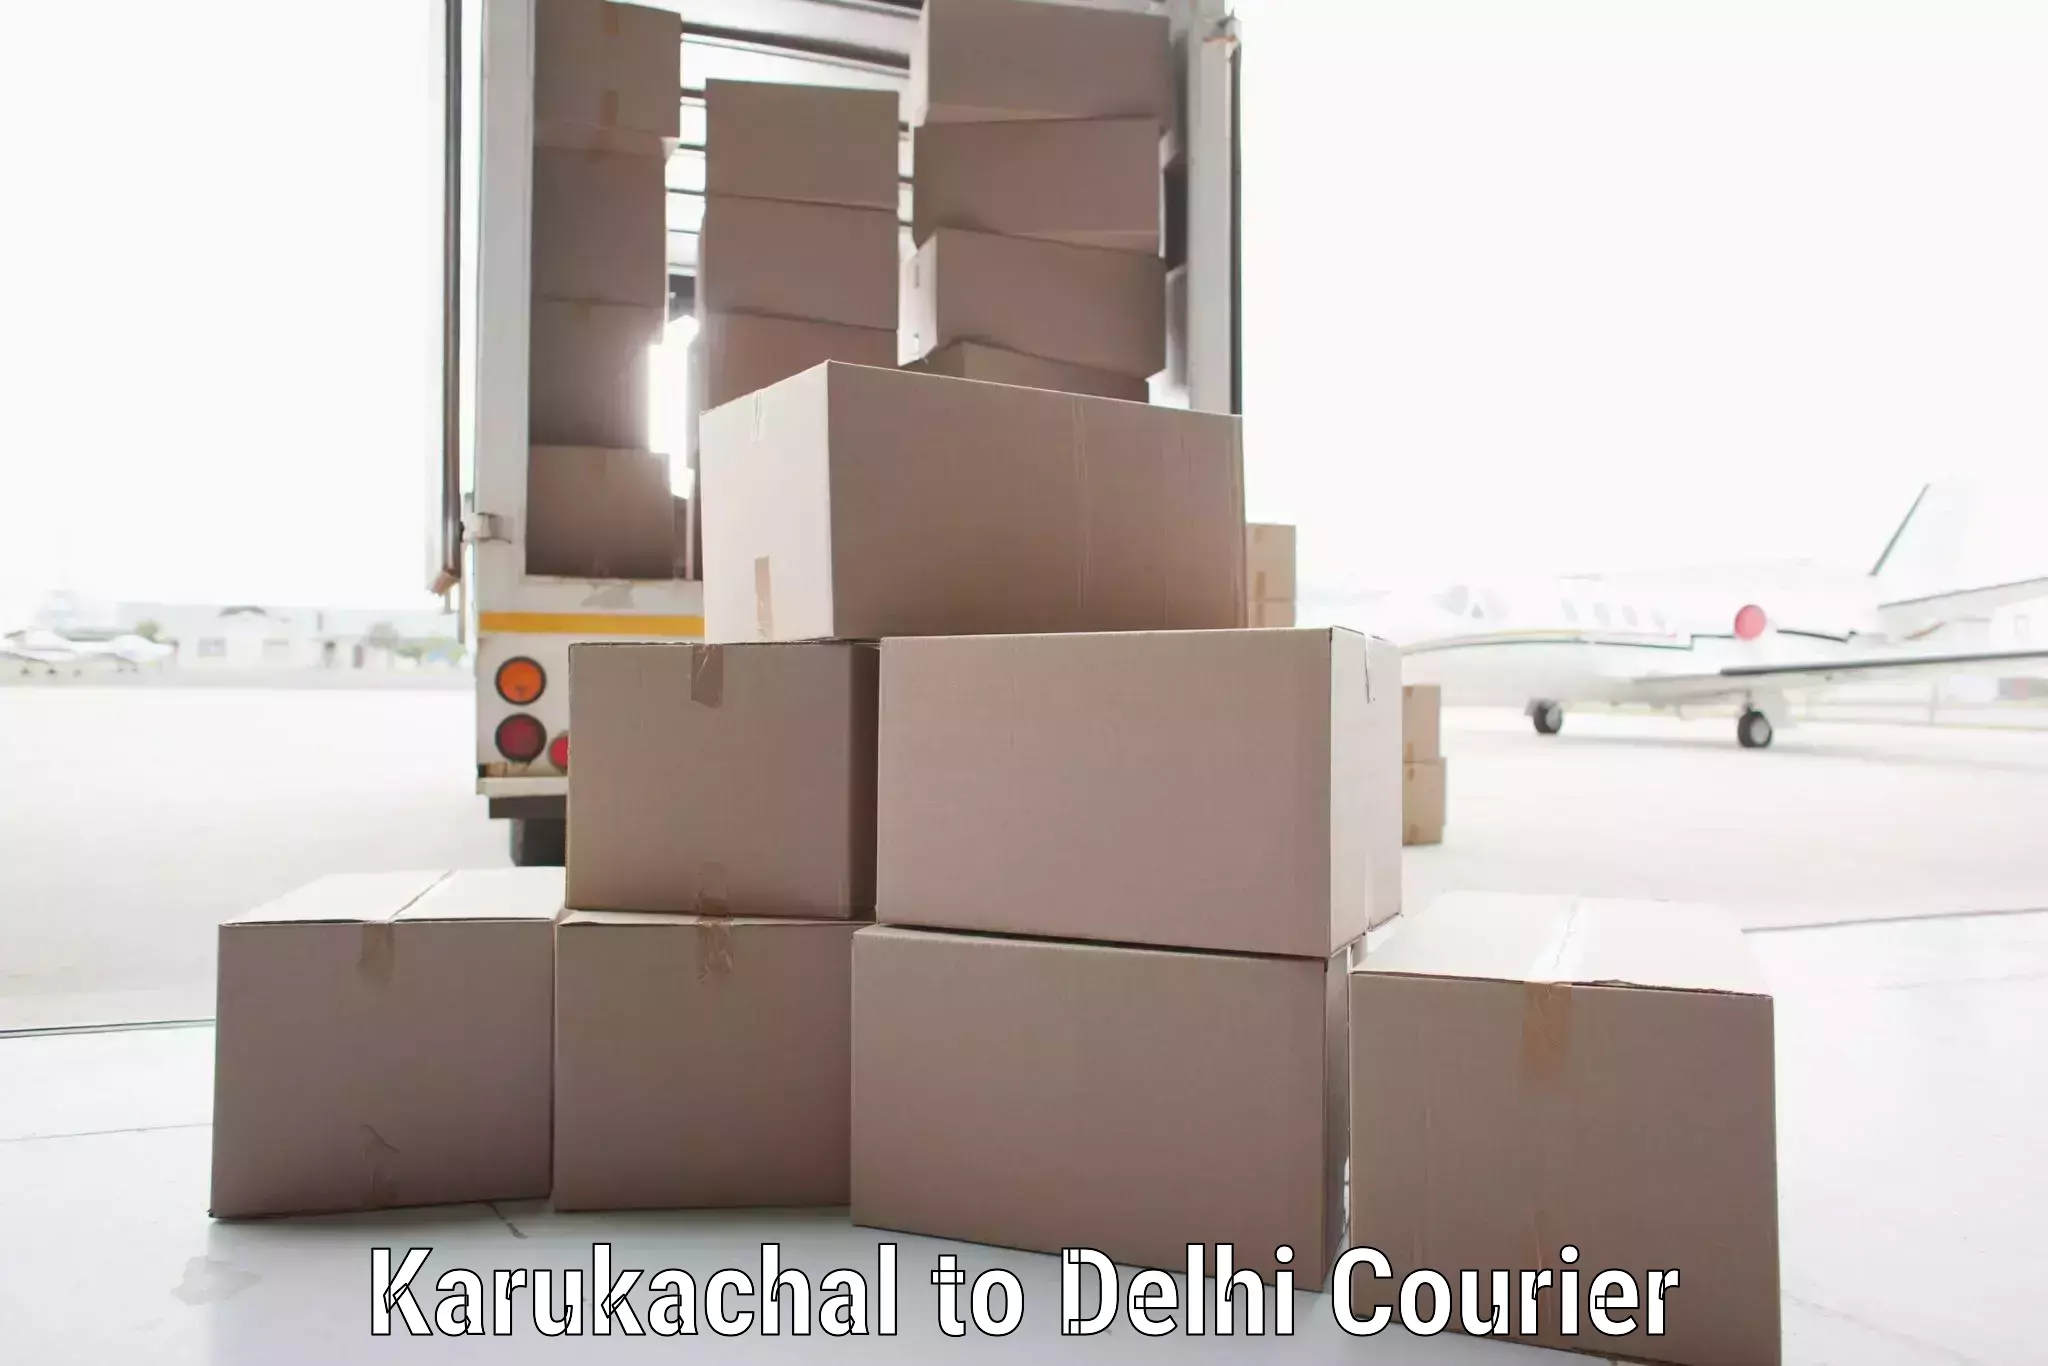 Cost-effective courier options Karukachal to IIT Delhi